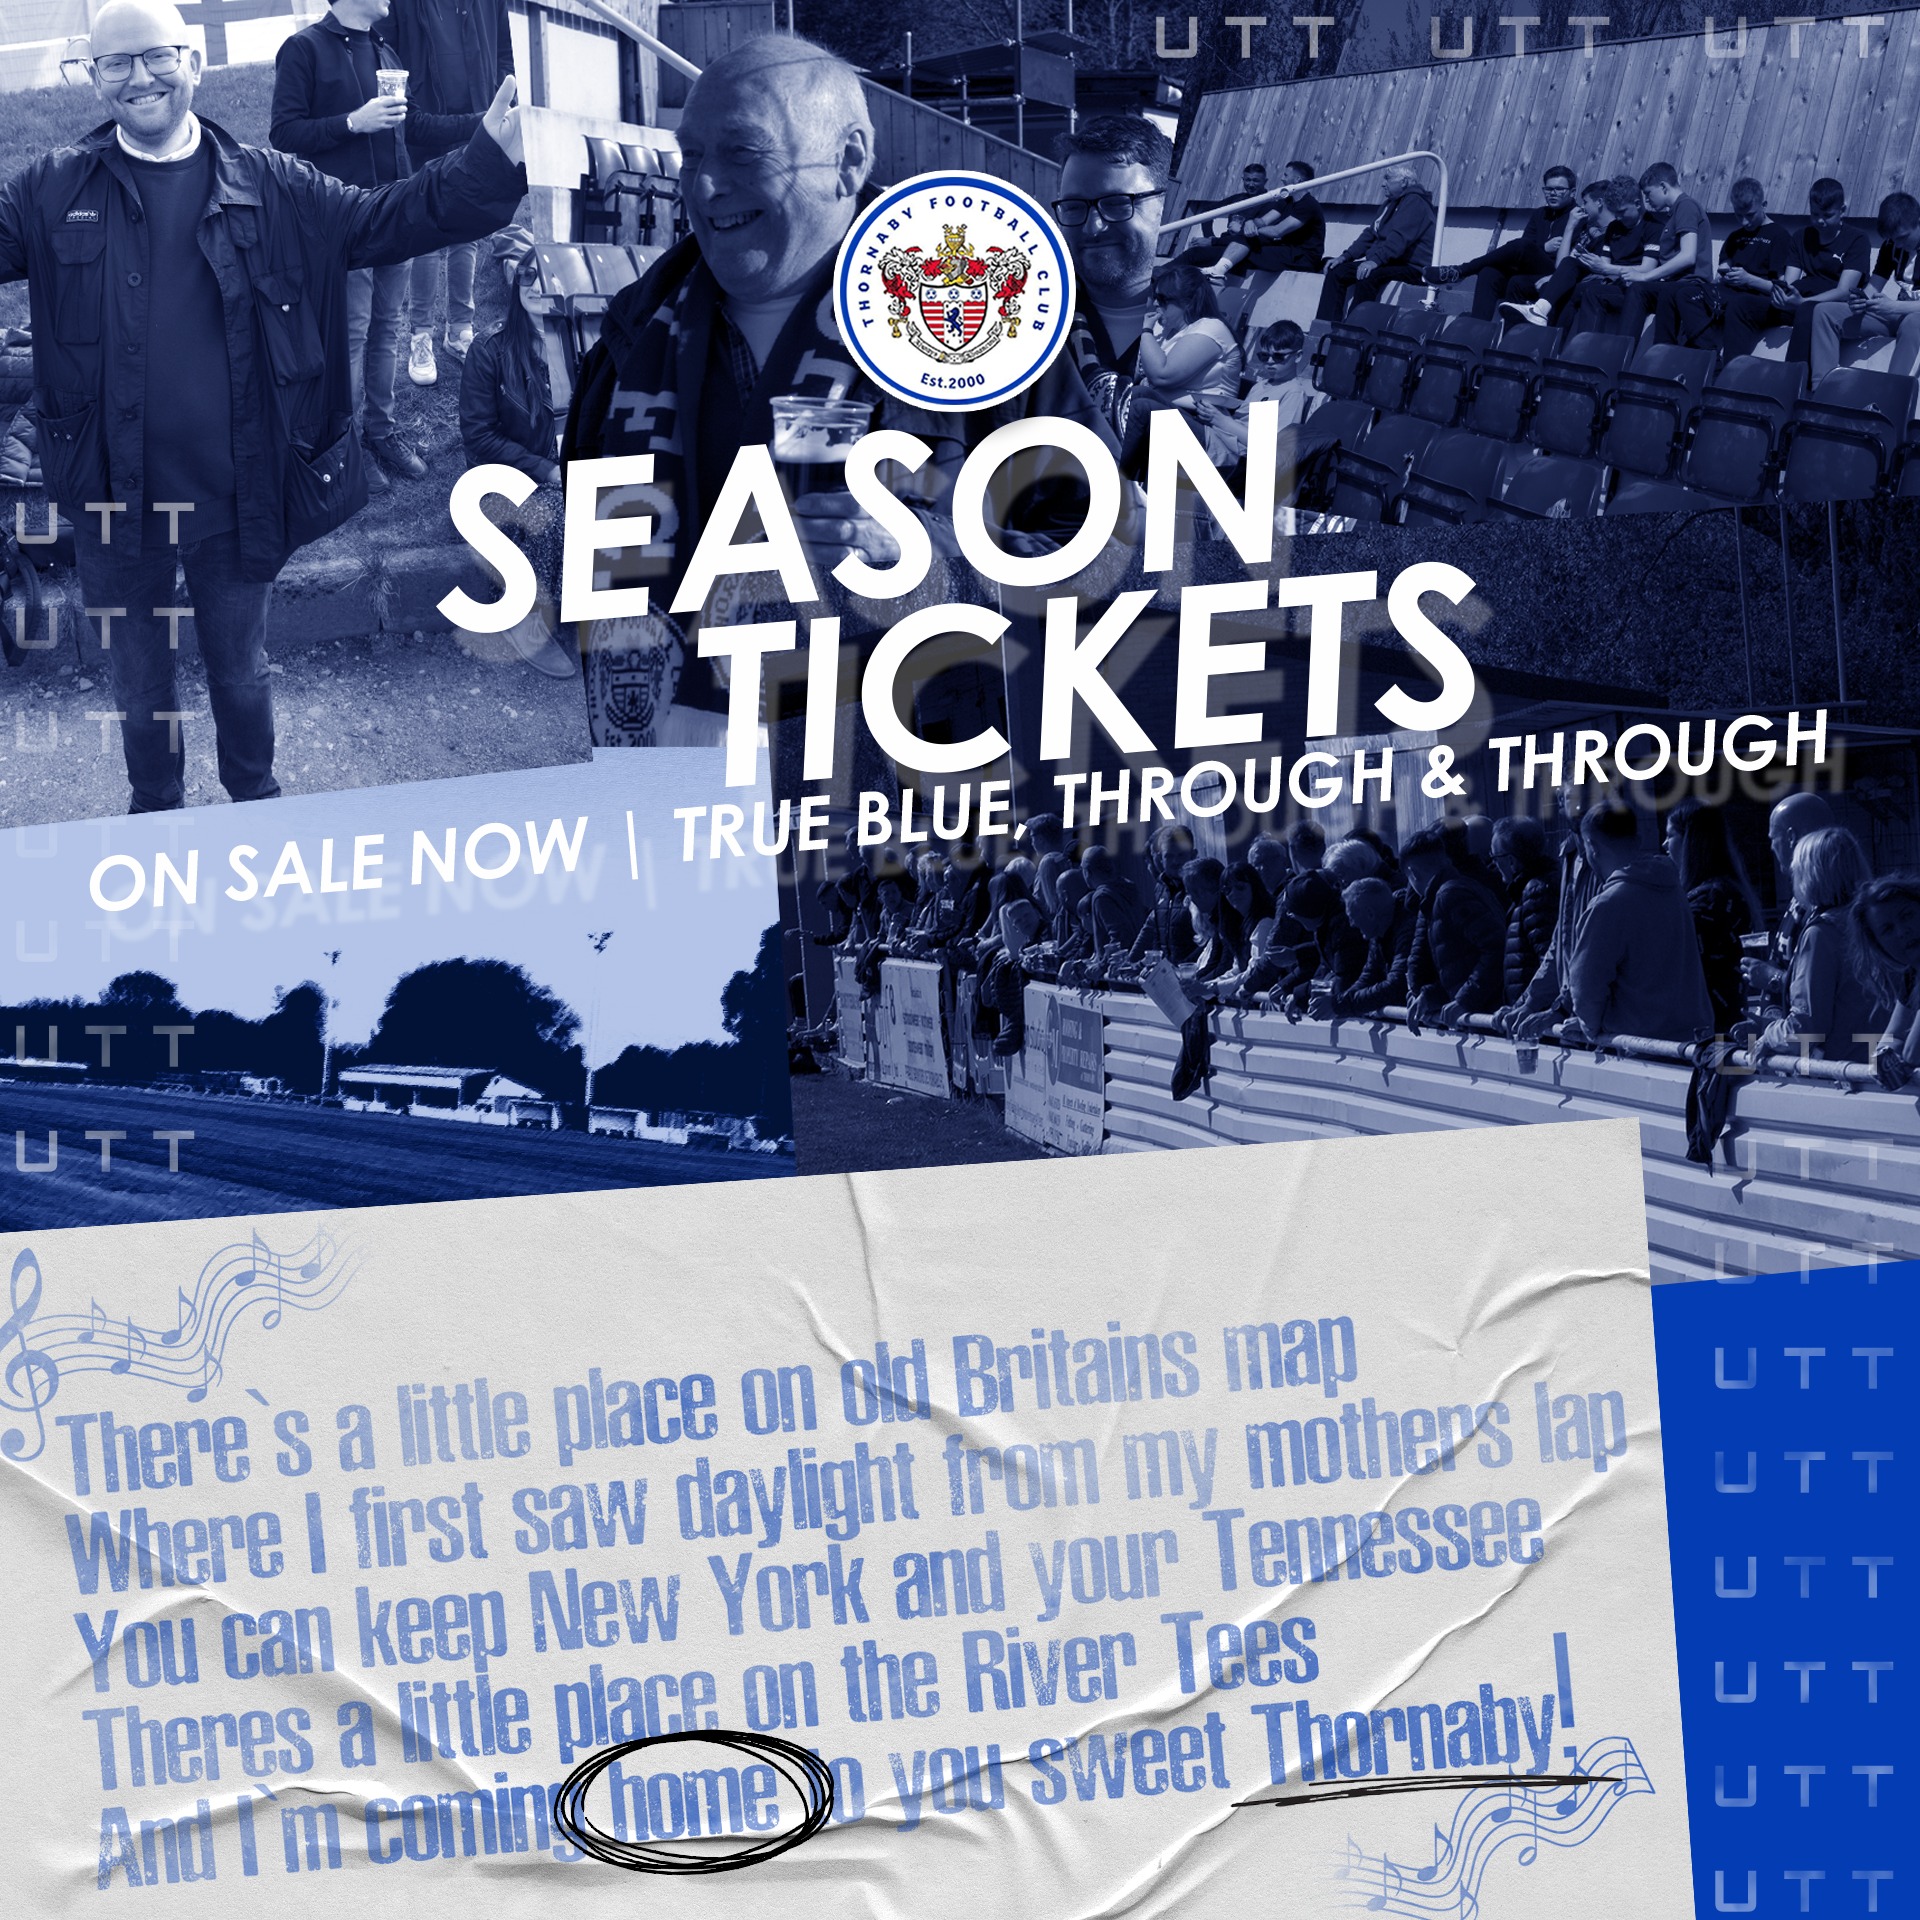 Season tickets